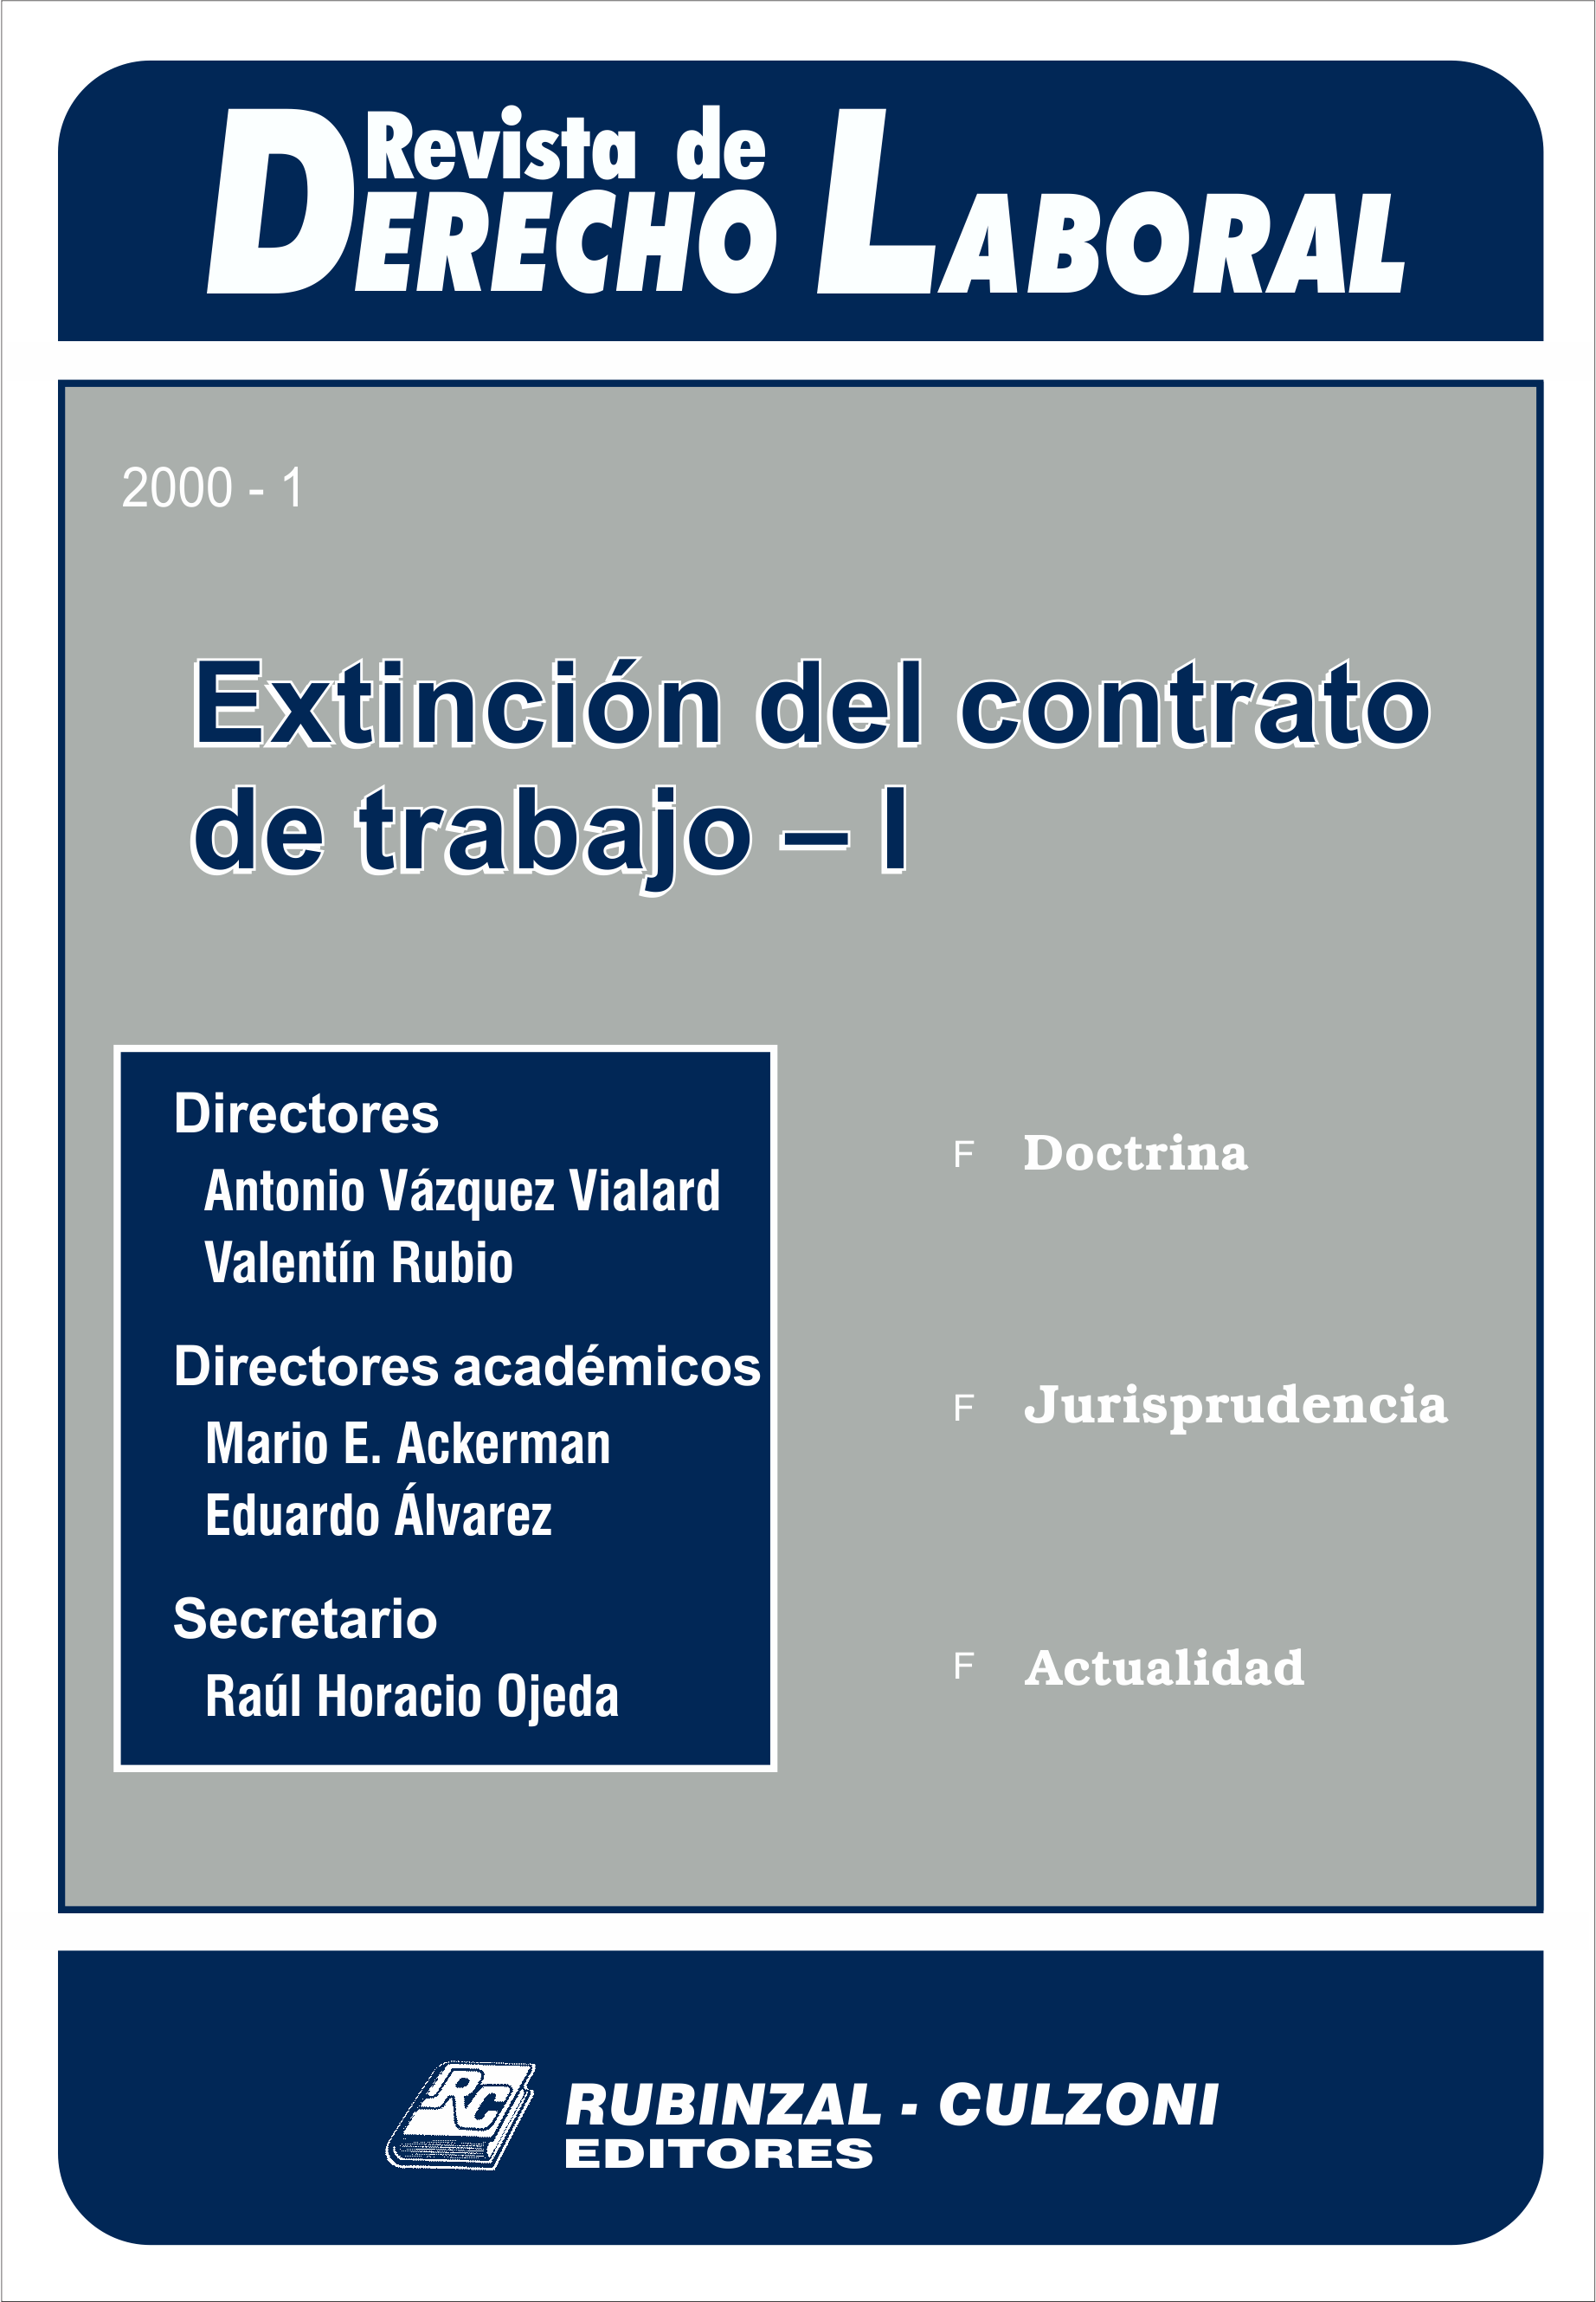 Revista de Derecho Laboral - Extinción del contrato de trabajo - I.